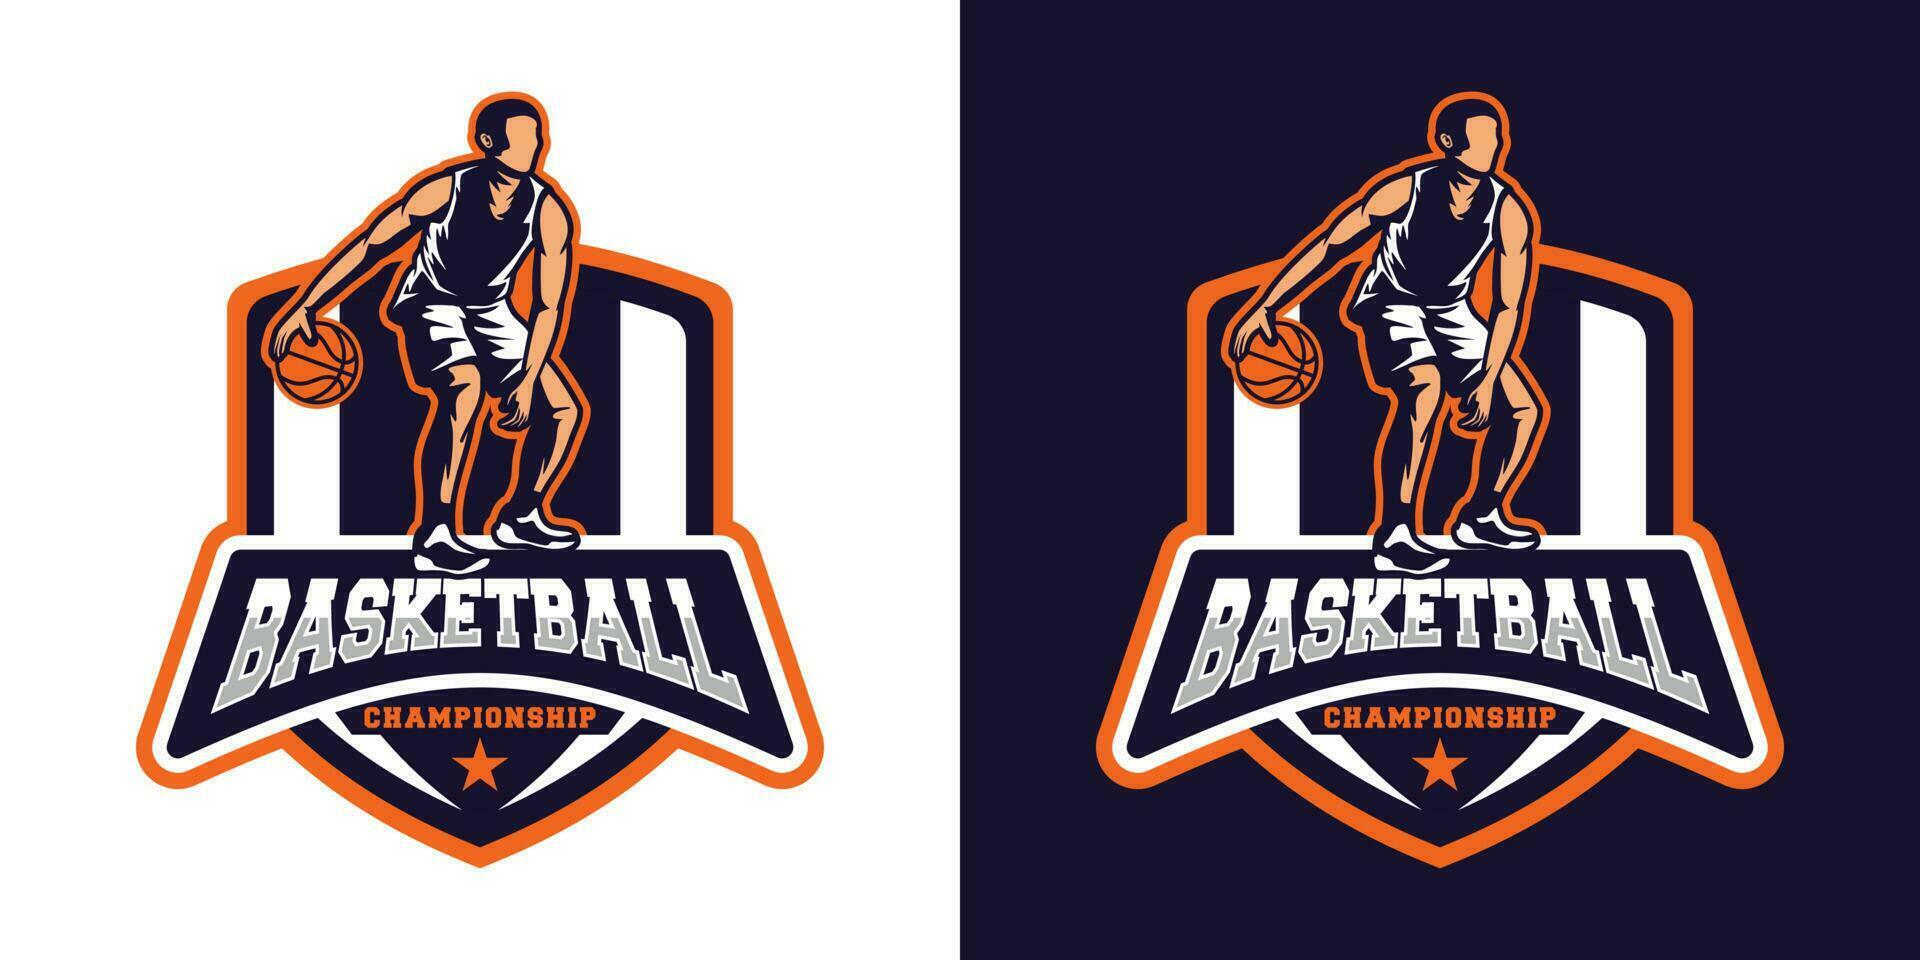 basketboll logotyp vektor